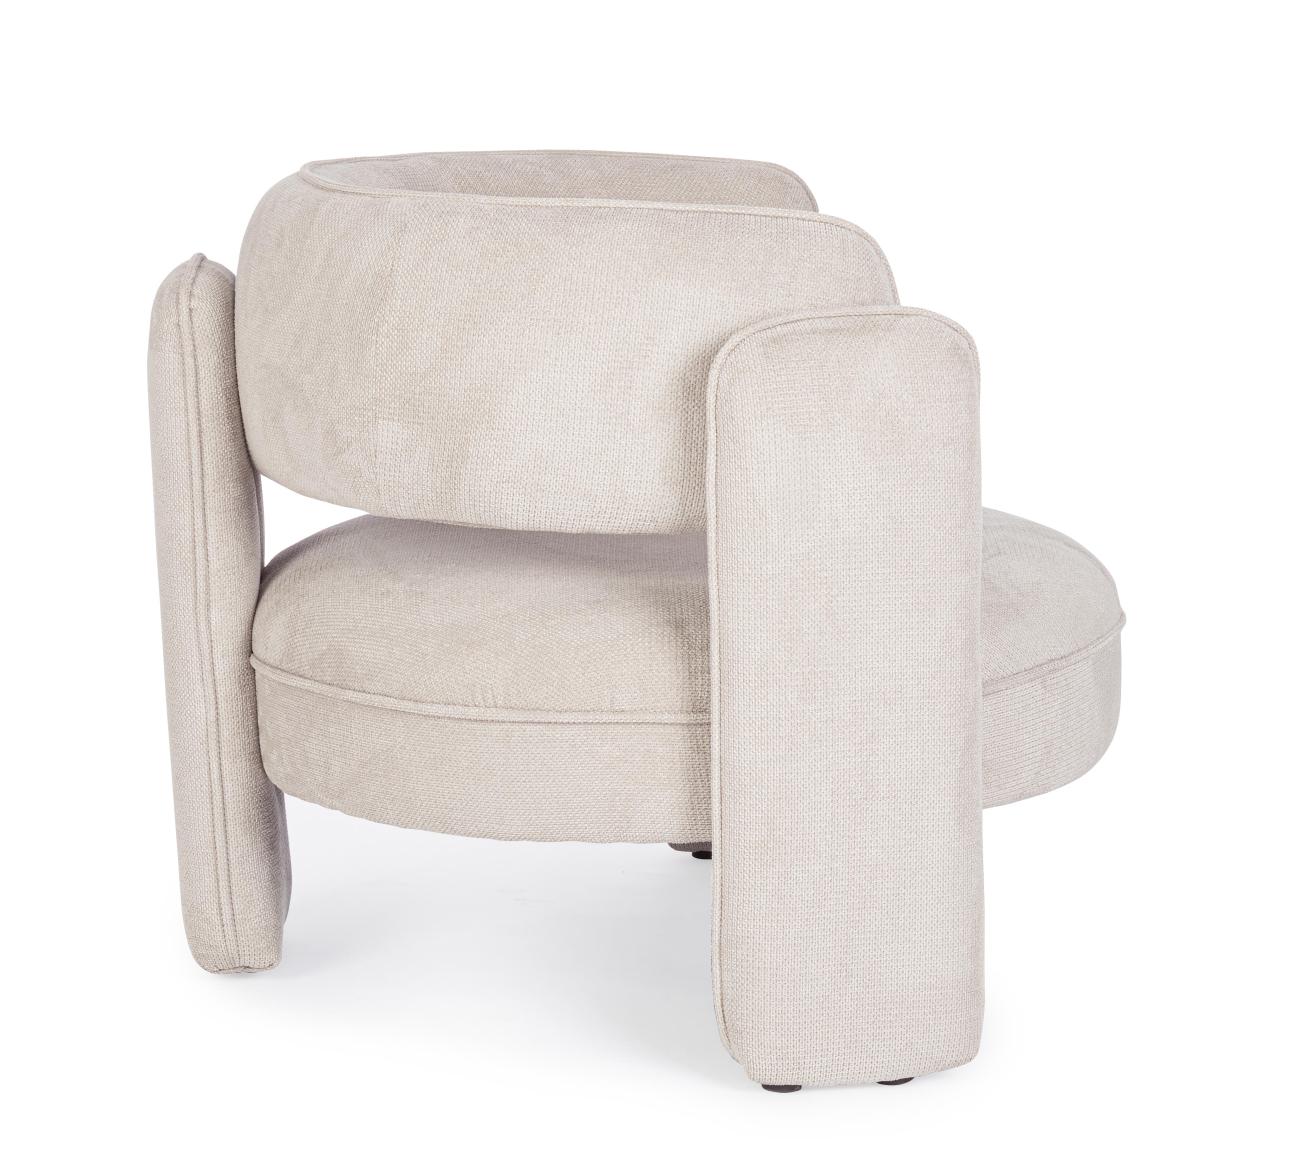 Der Sessel Aisha überzeugt mit seinem modernen Stil. Gefertigt wurde er aus Stoff, welcher einen Beigen Farbton besitzt. Der Sessel besitzt eine Sitzhöhe von 44 cm.